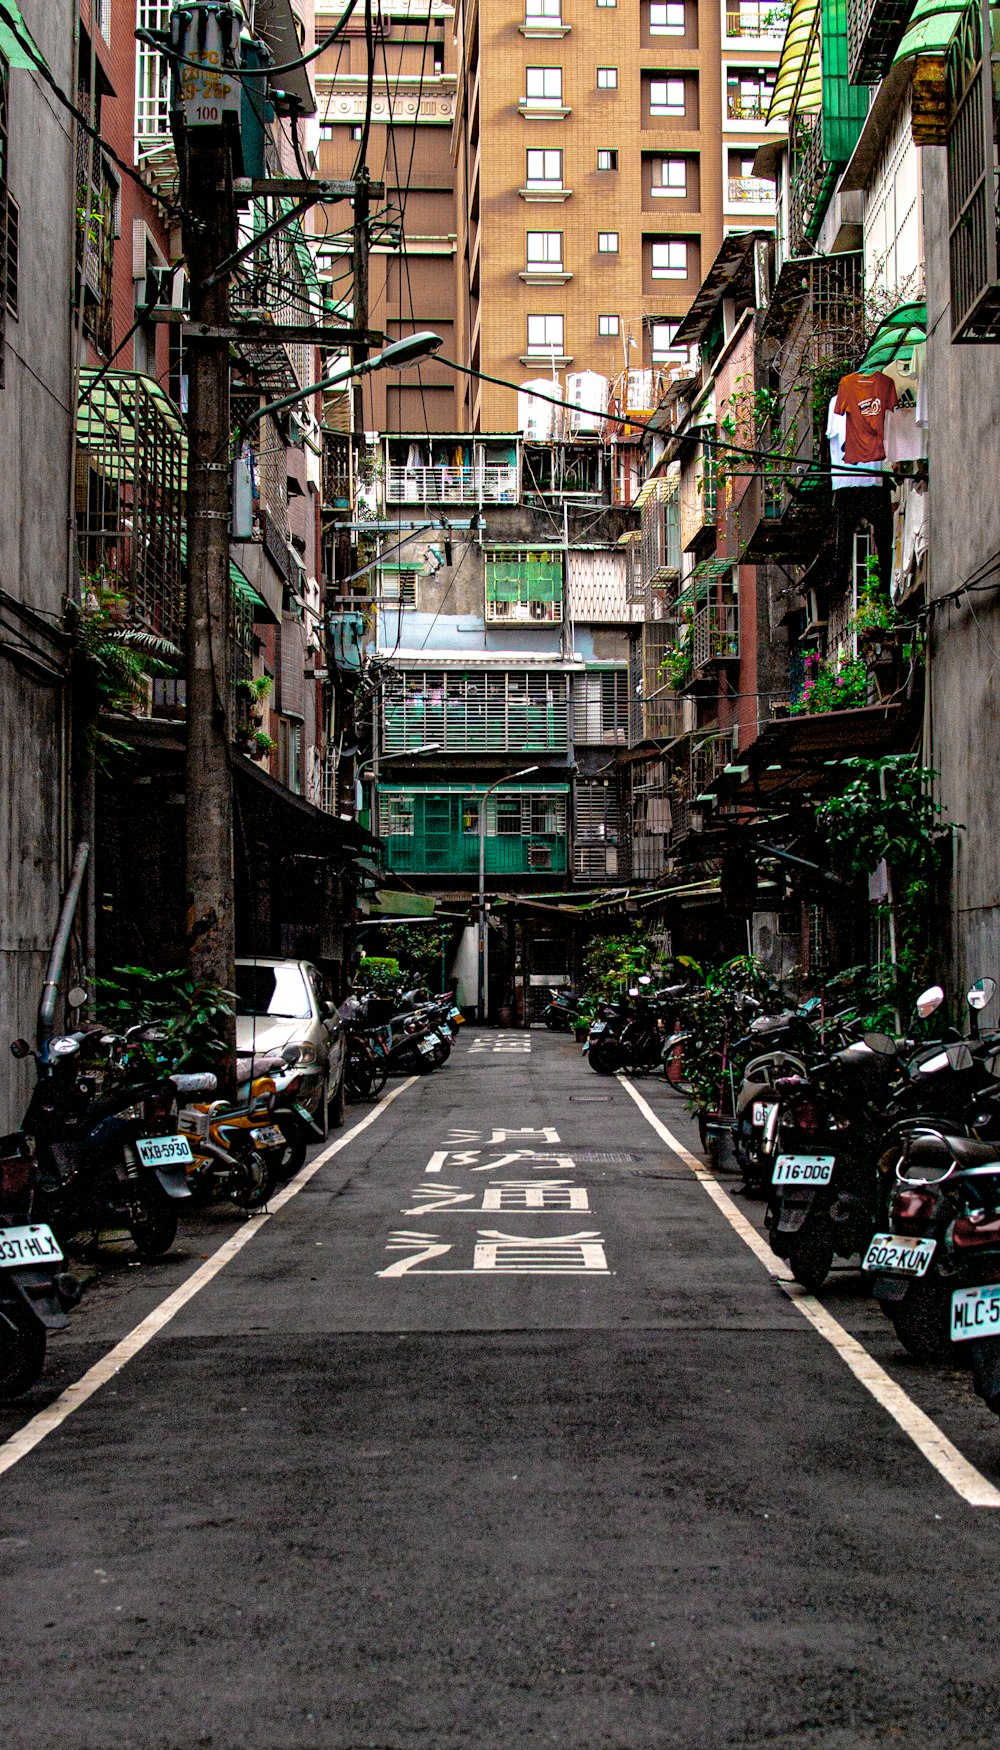 Una stretta strada cittadina fiancheggiata da motociclette parcheggiate